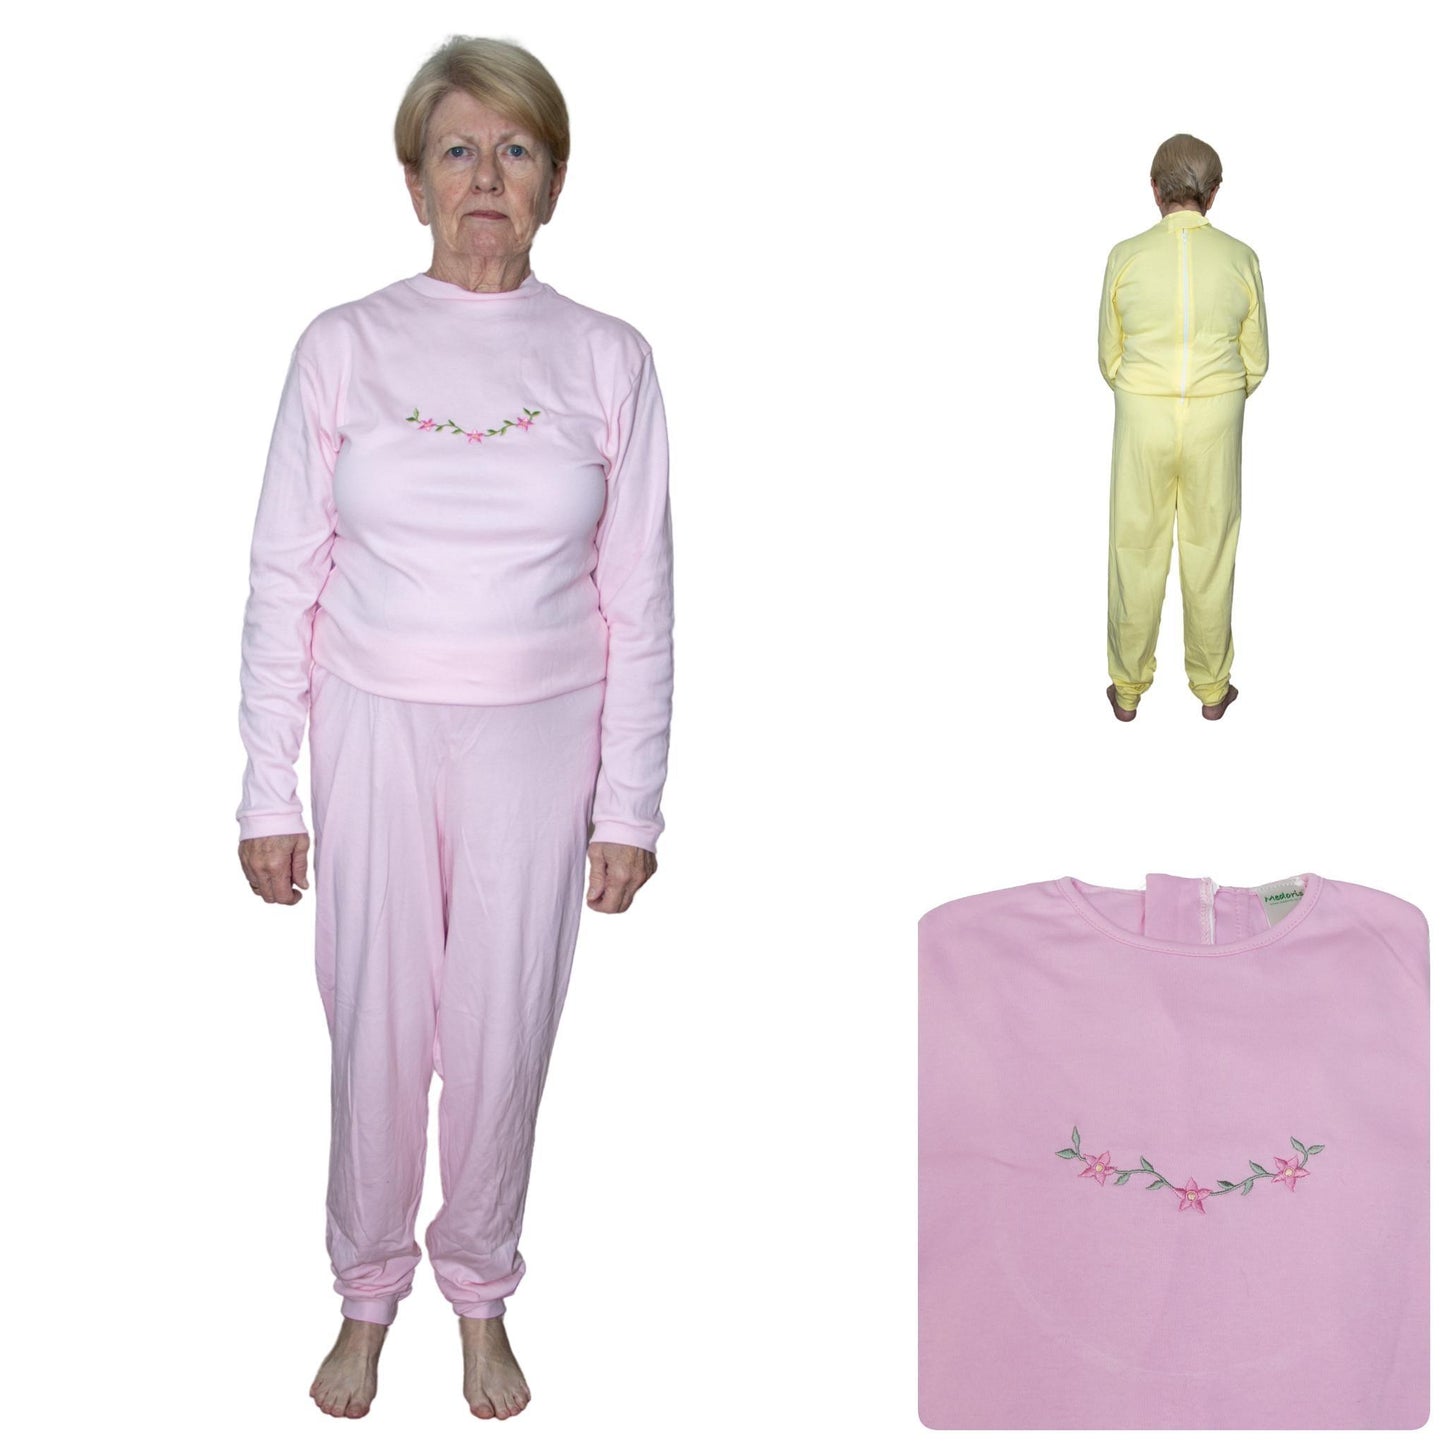 Women's Adaptive Nightwear: Ladies All-in-One Pyjamas with Long Sleeves - M140 - MEDORIS